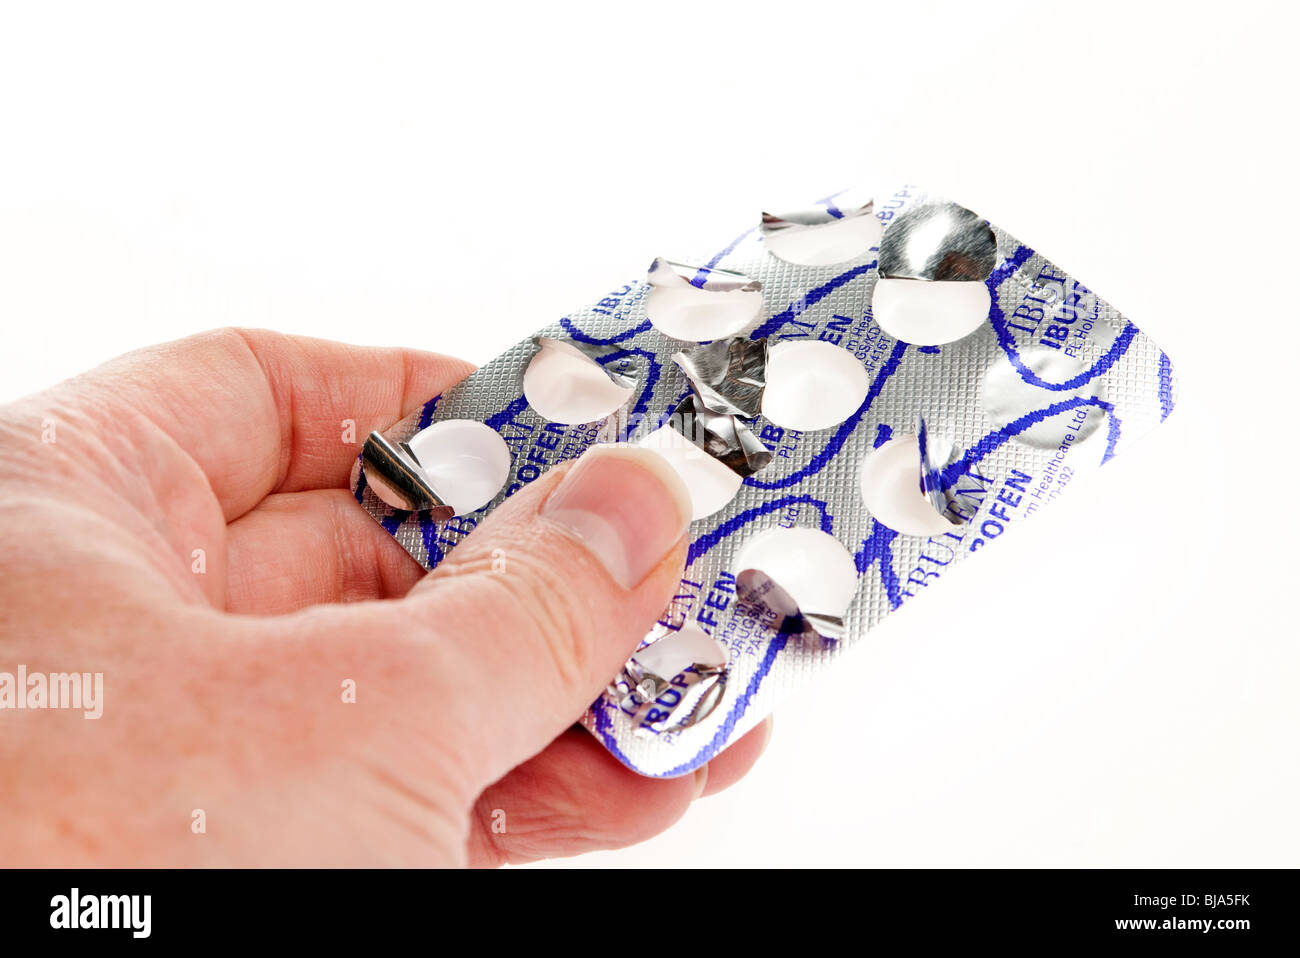 Paket von Kopfschmerzen halten Tabletten Tabletten Stockfoto